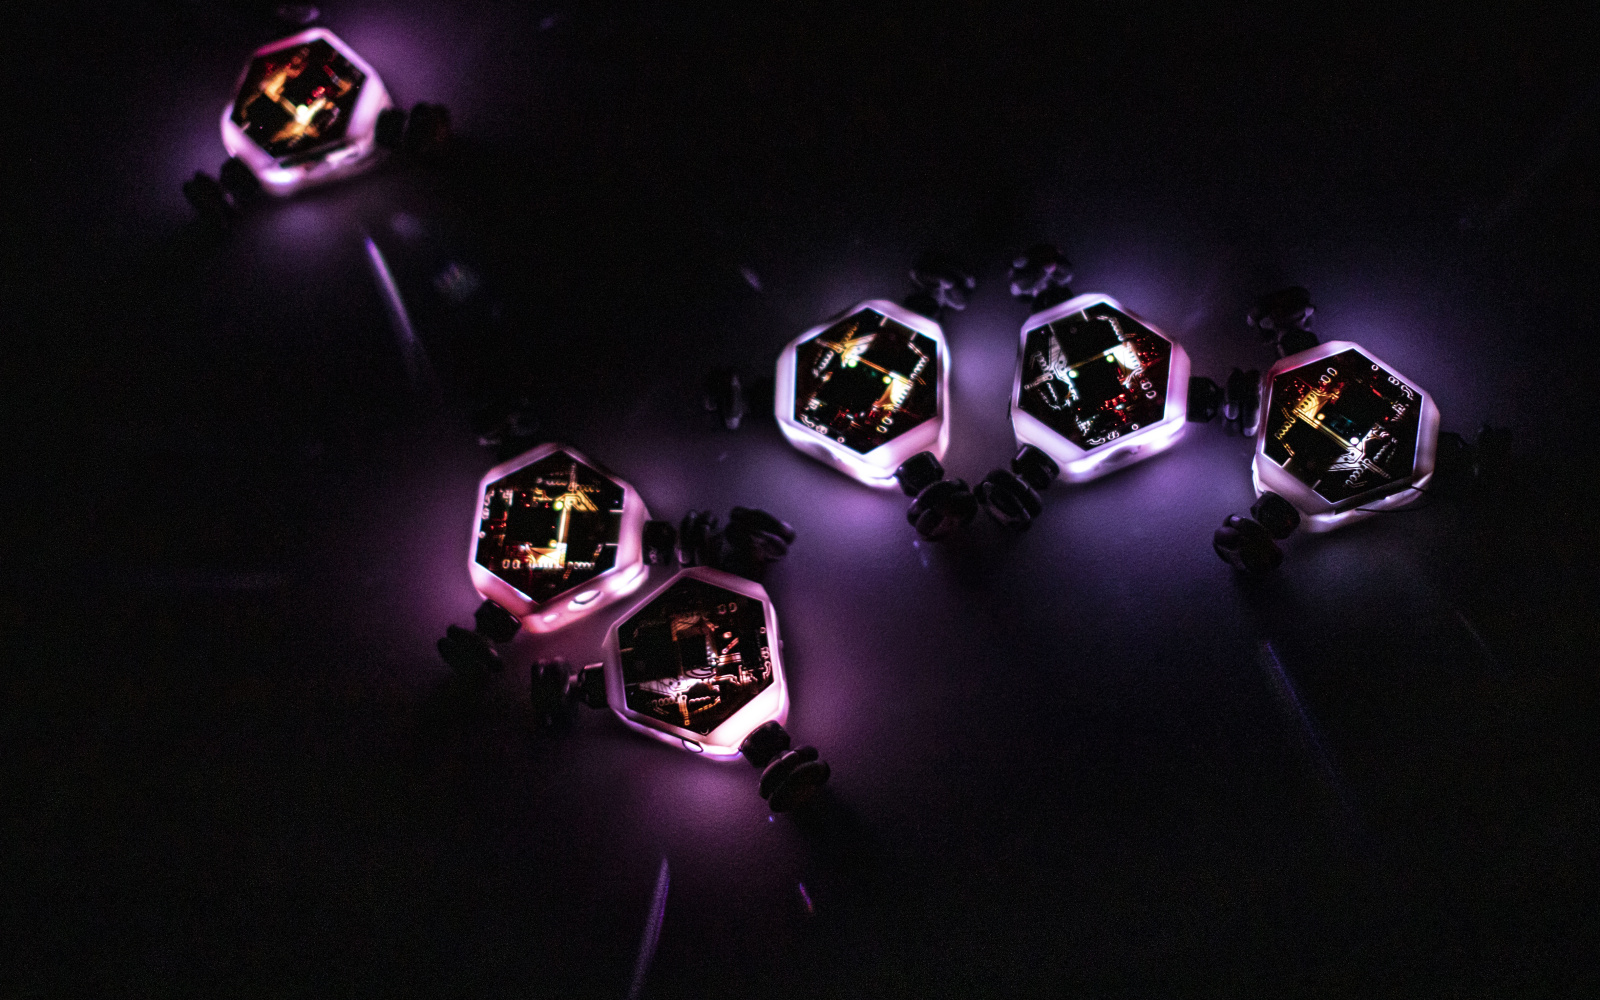 Leuchtende kleine Roboterkreisel bewegen sich auf dunklem Untergrund und interagieren miteinander.